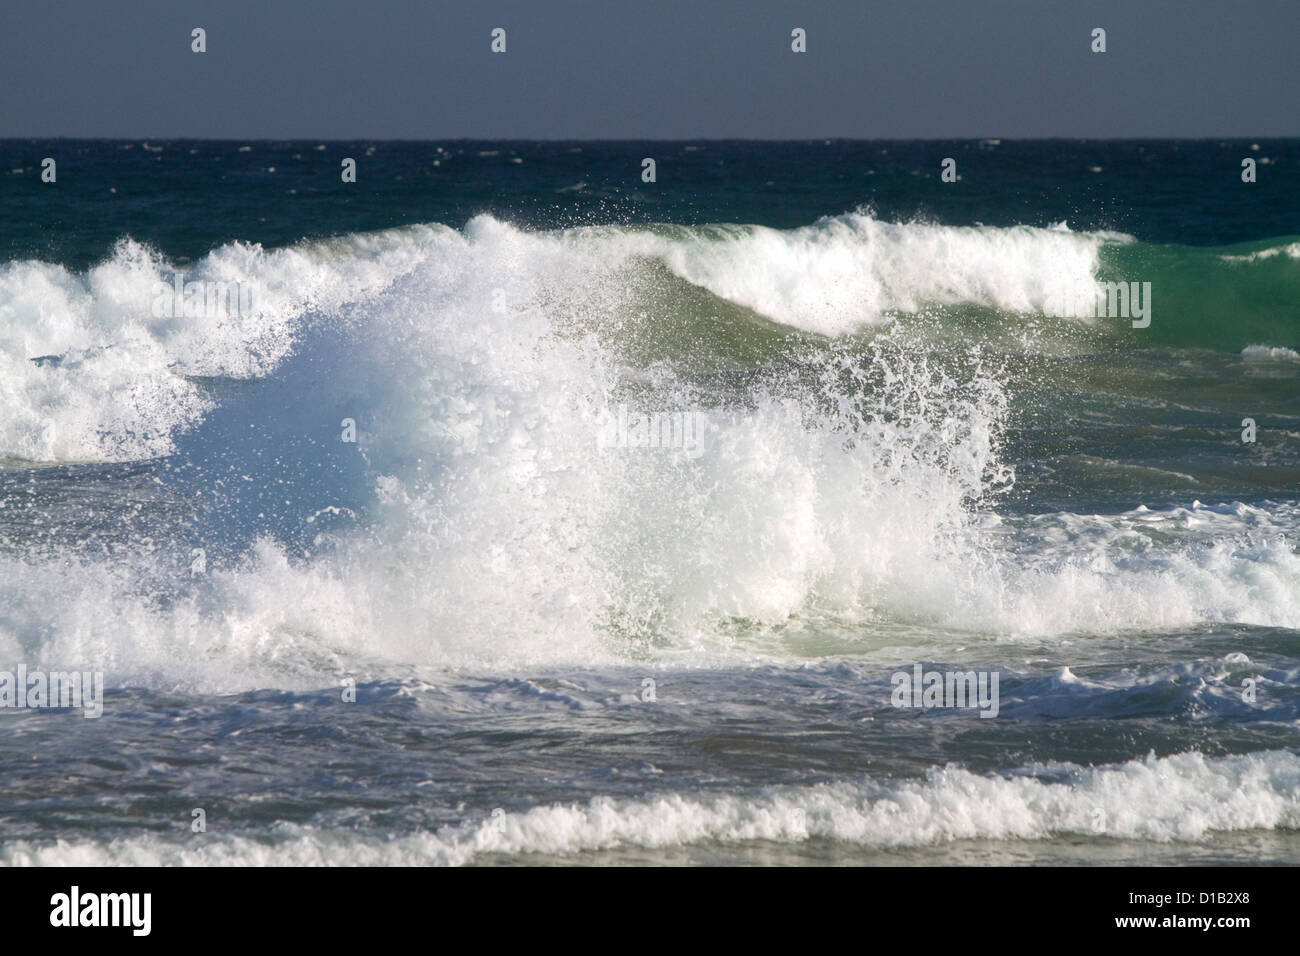 Les vagues de l'océan Pacifique au large de la côte de l'île de Kauai, Hawaii, USA. Banque D'Images